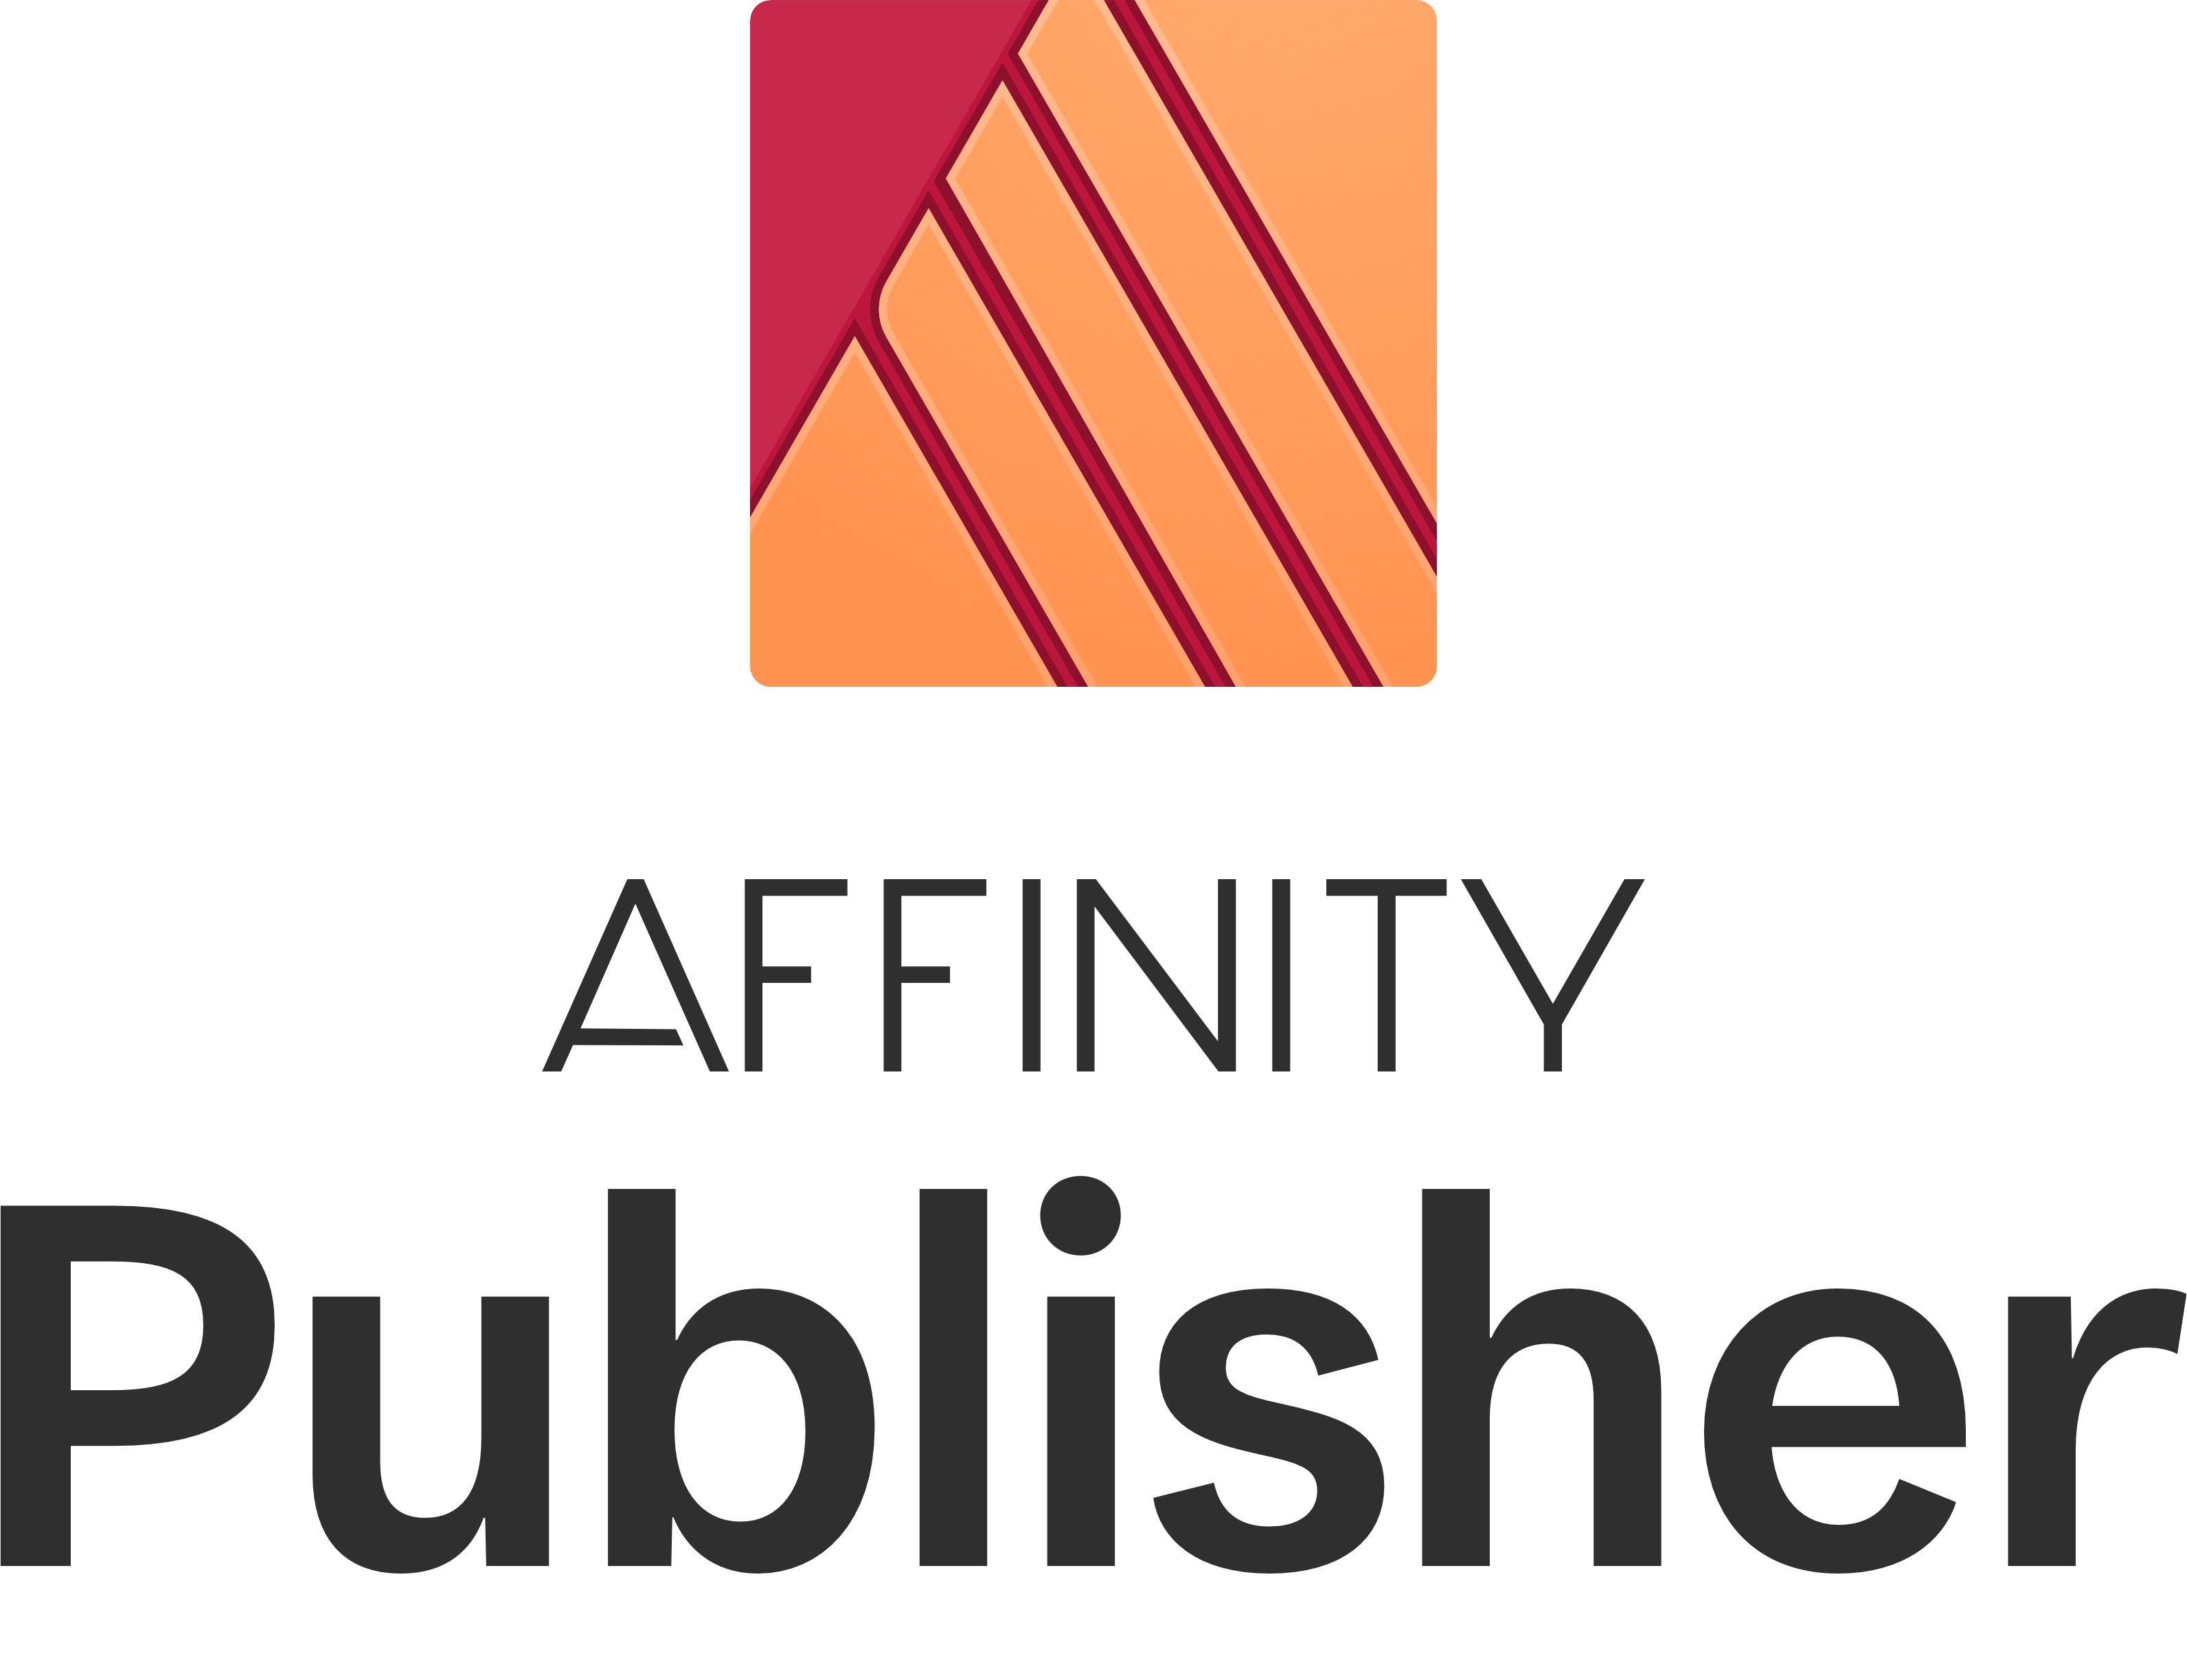 Affinity Publisher